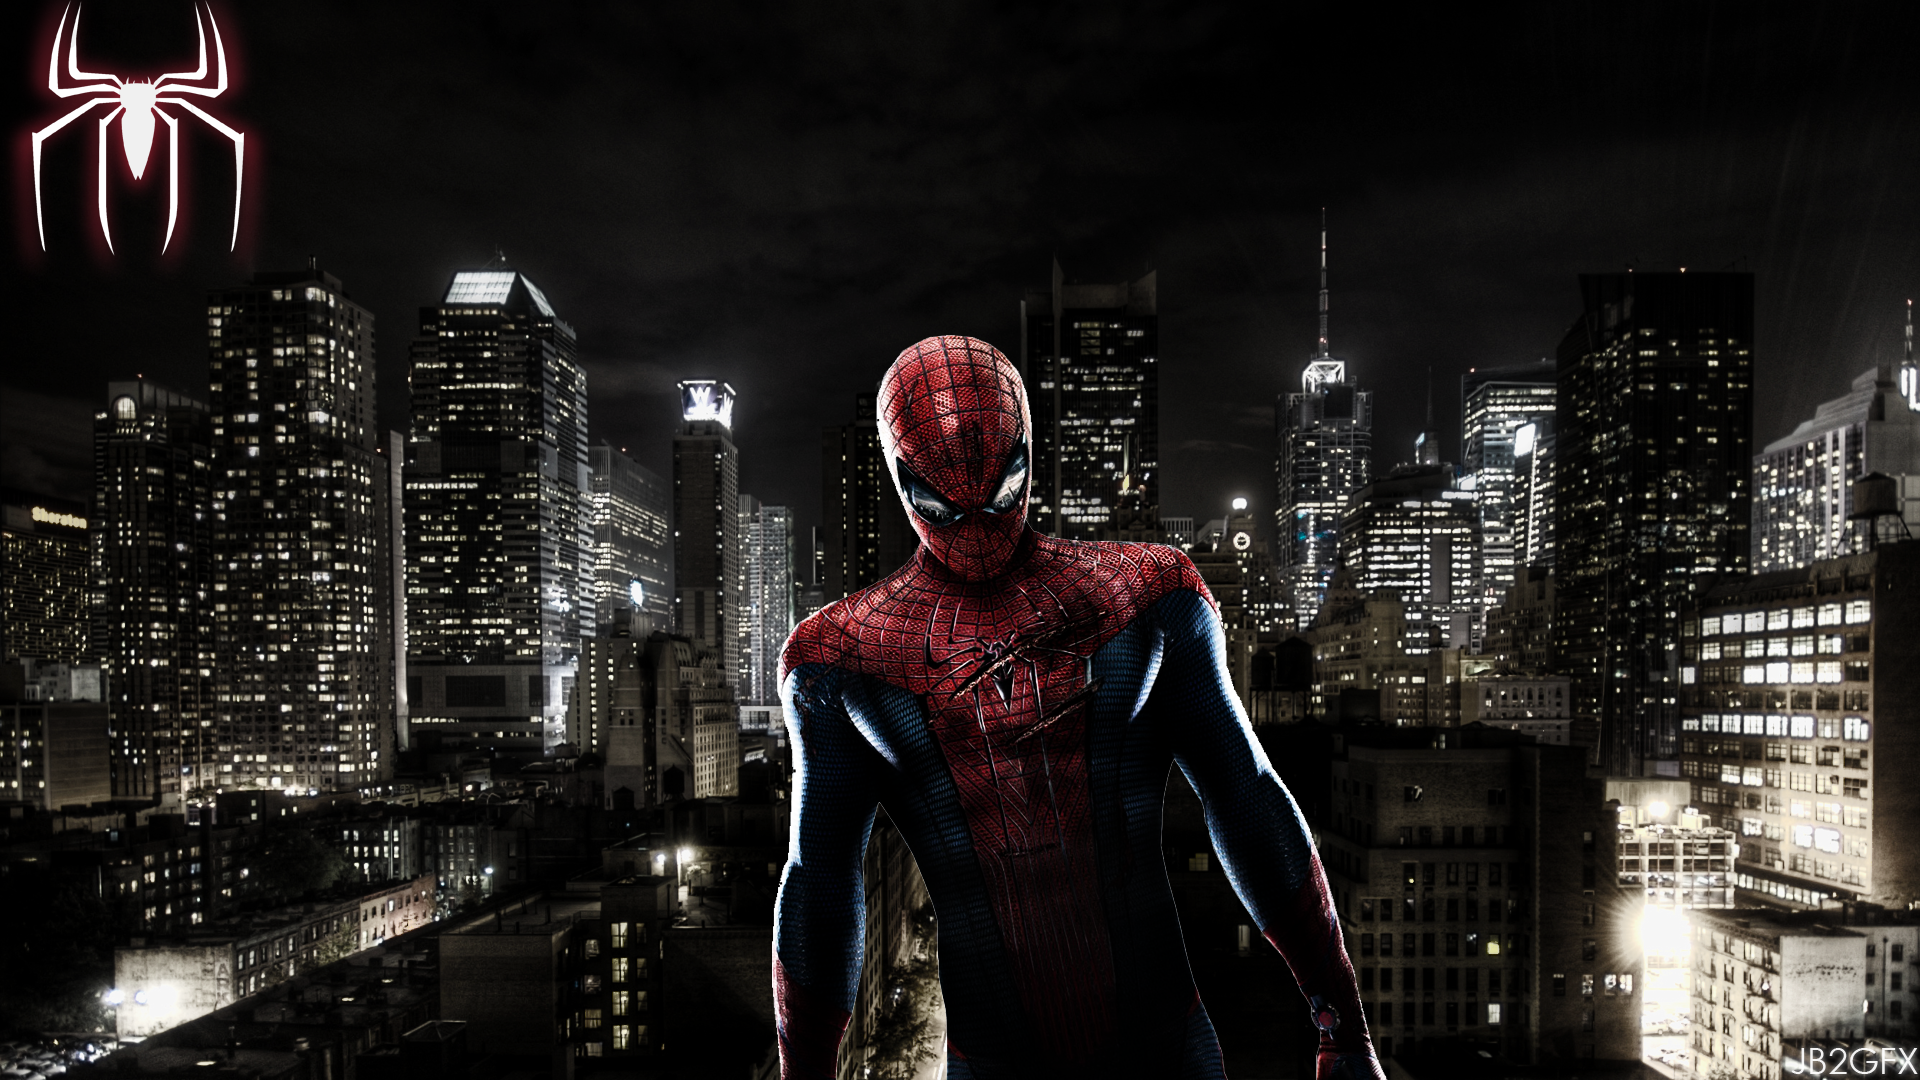 Spiderman Wallpaper HD By Jb2graphics